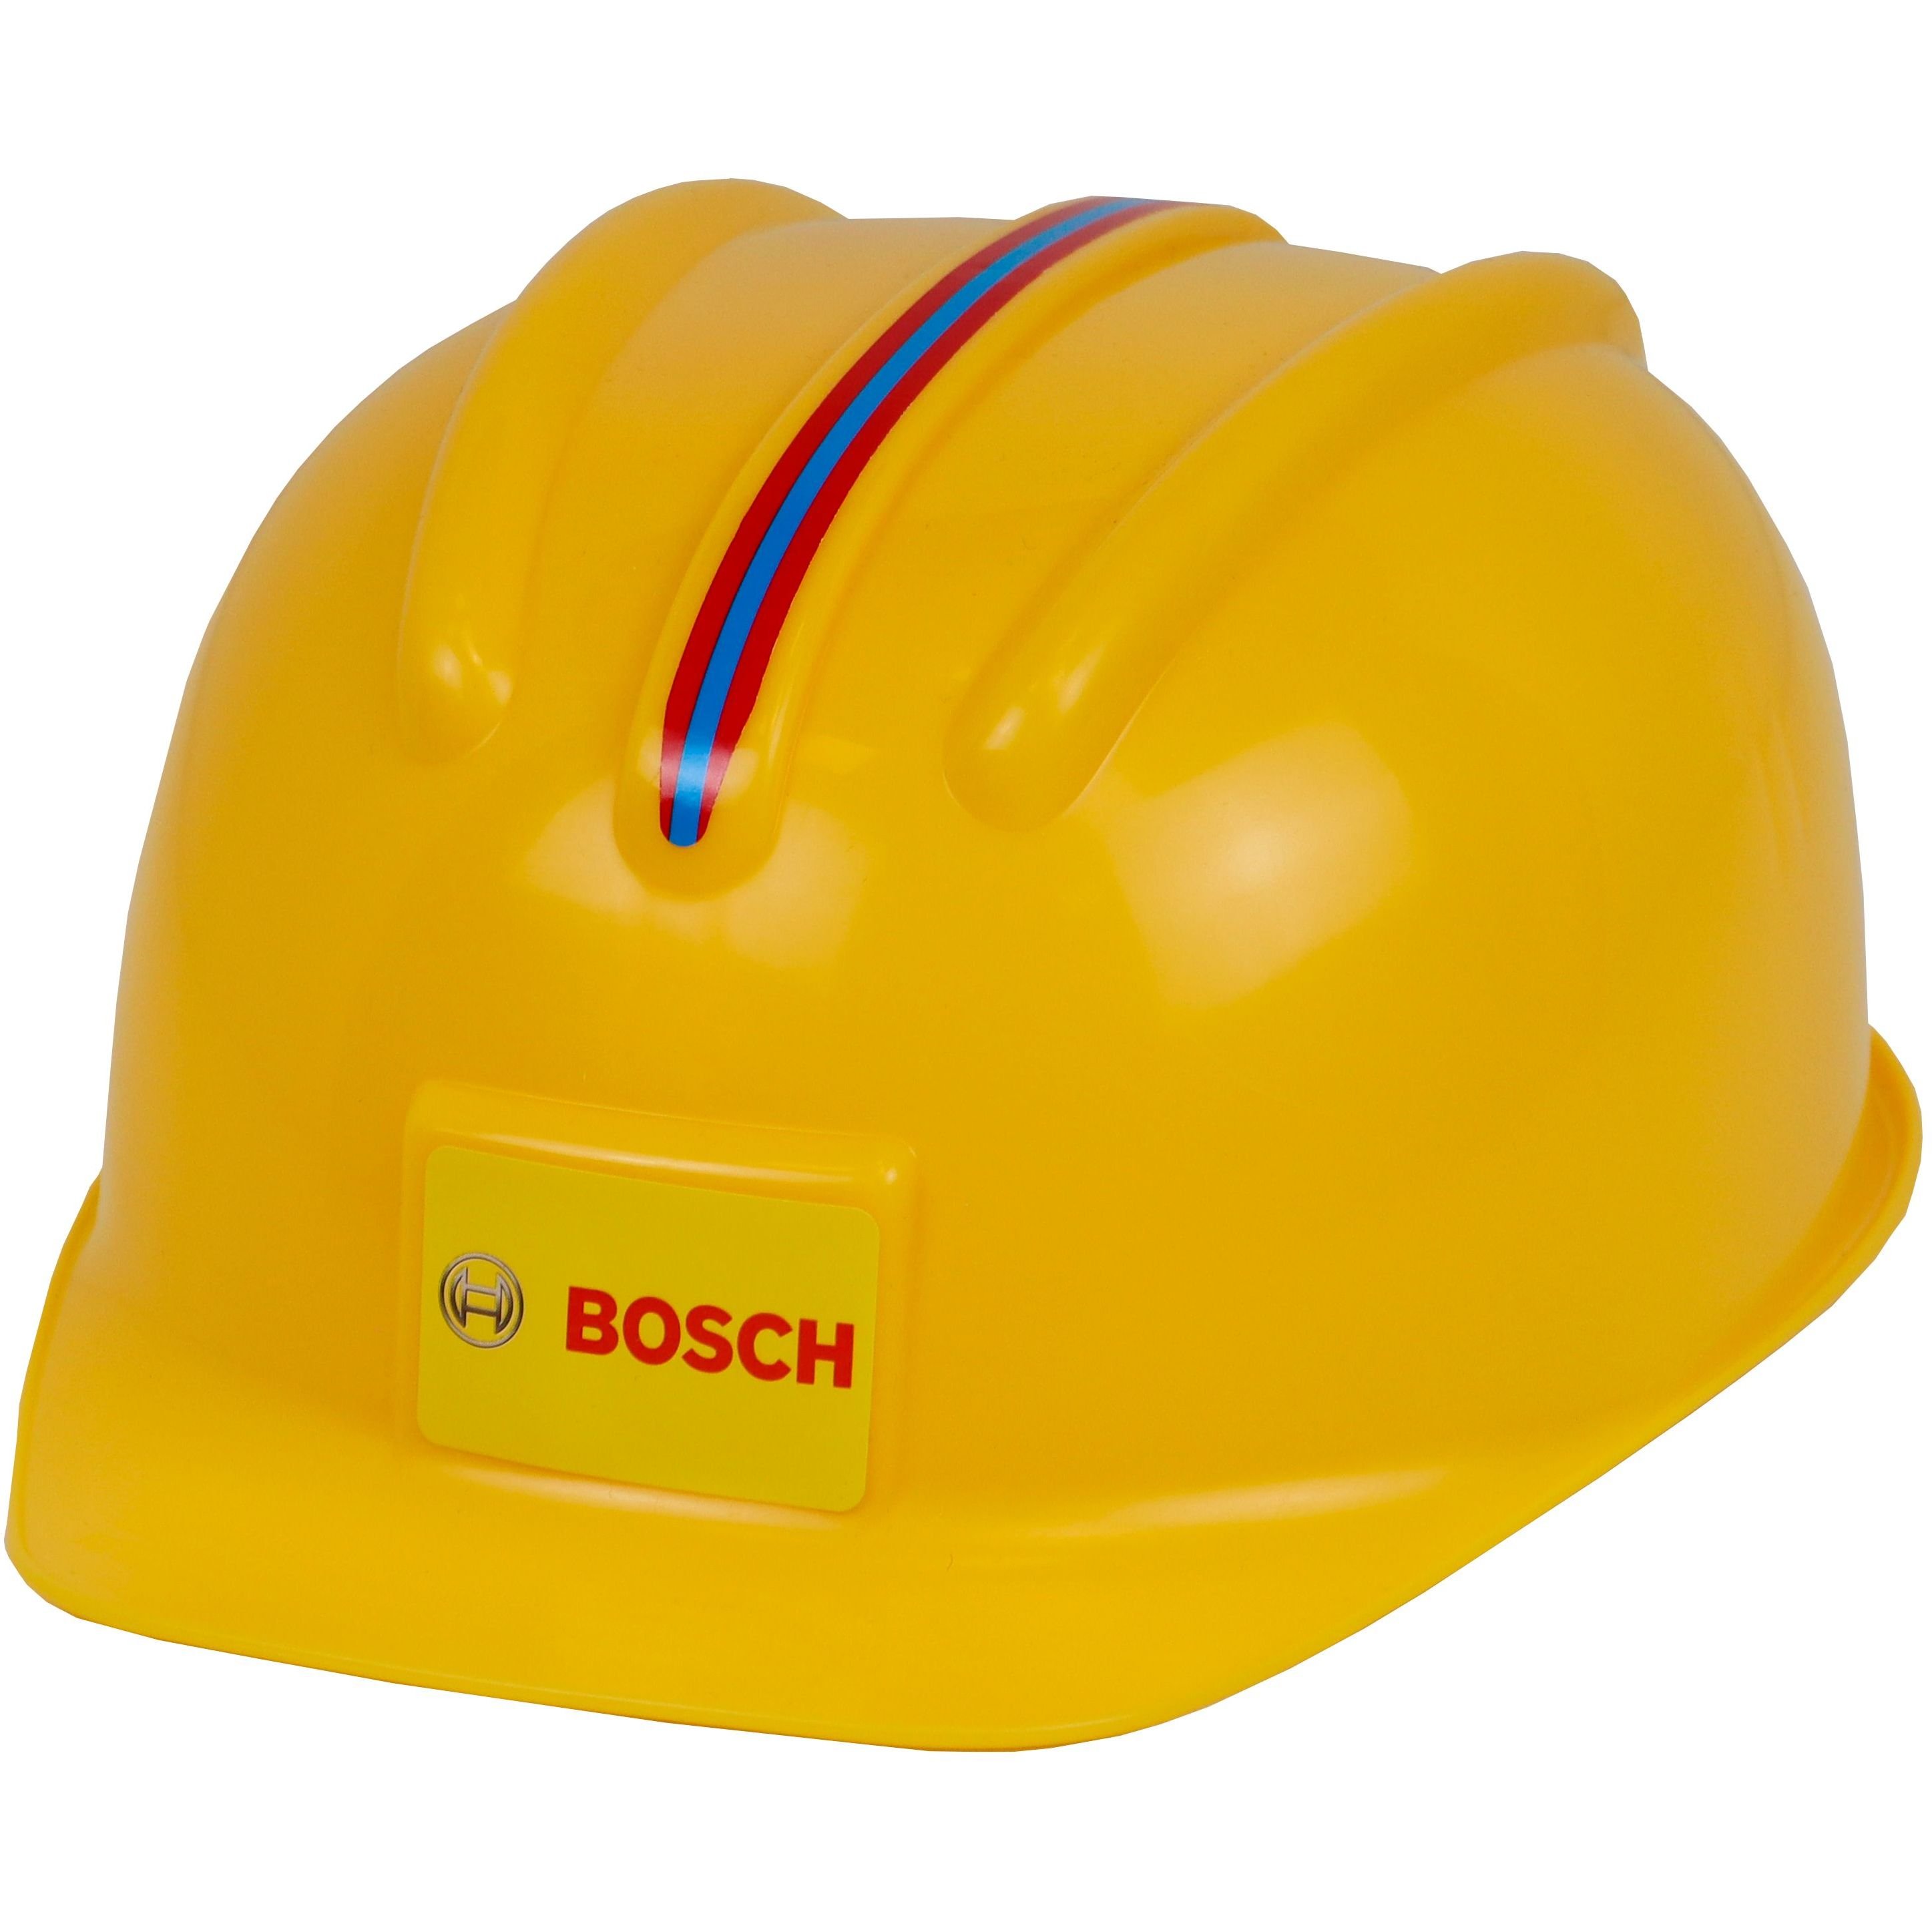 Игрушечный набор Bosch Mini аксессуаров со шлемом (8537) - фото 3